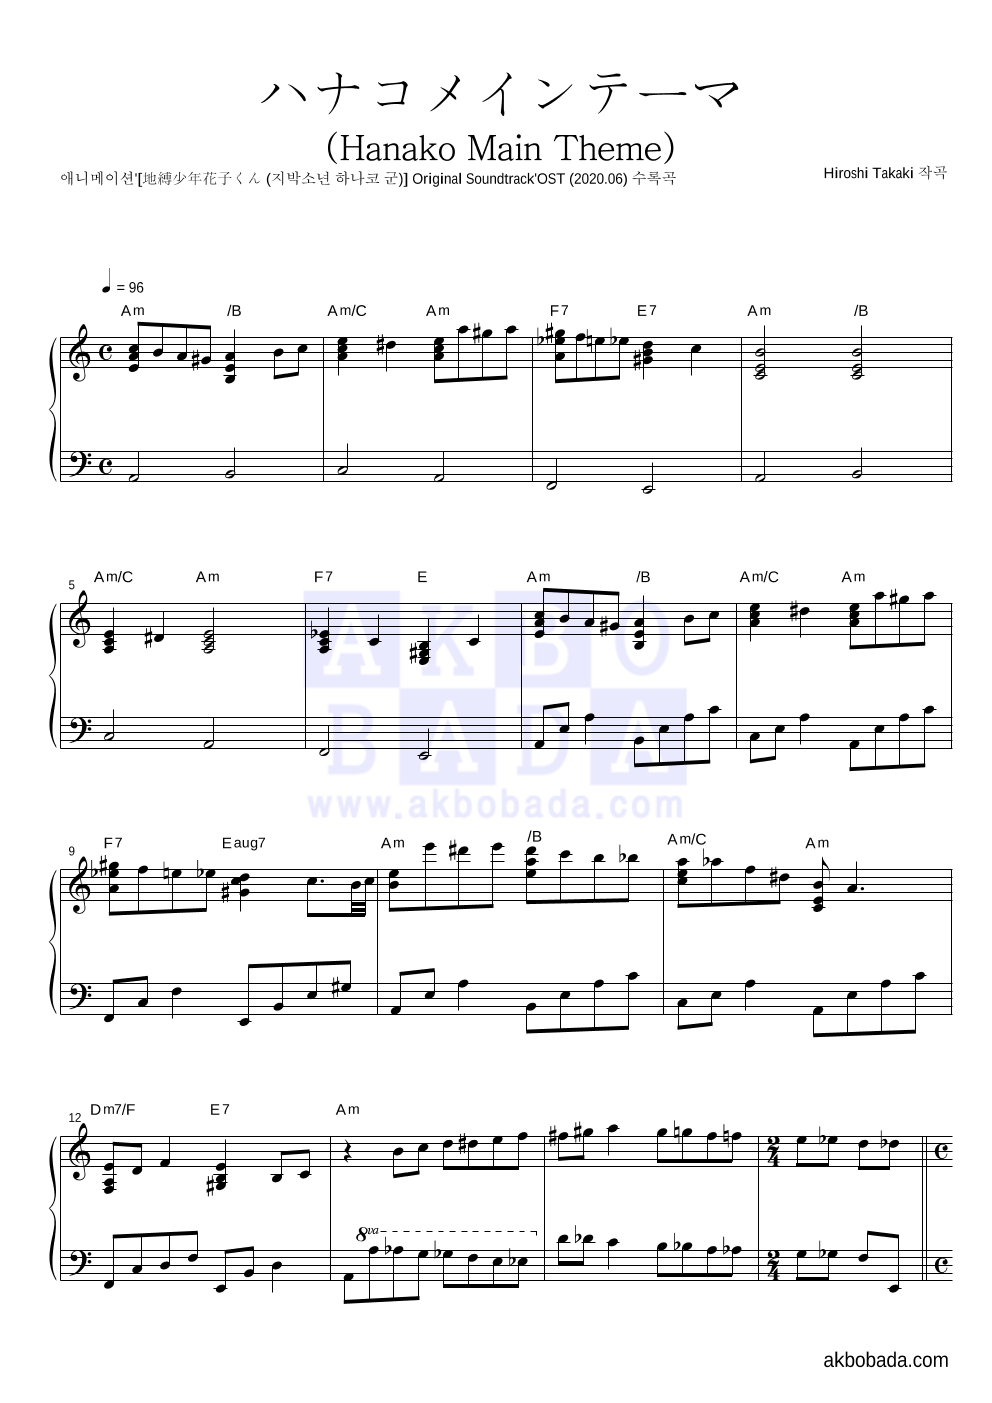 지박소년 하나코 군 - ハナコメインテーマ (Hanako Main Theme) 피아노 2단 악보 